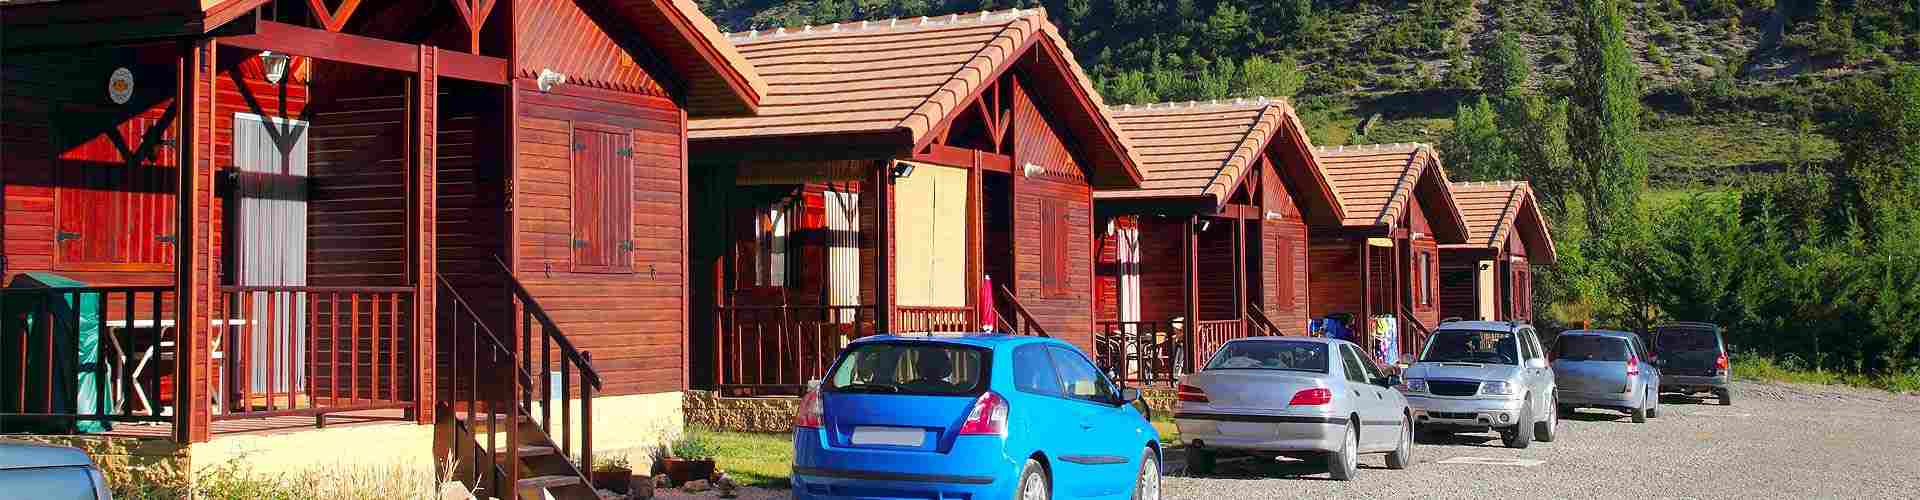 Campings y bungalows en Lerma
           
           


          
          
          


